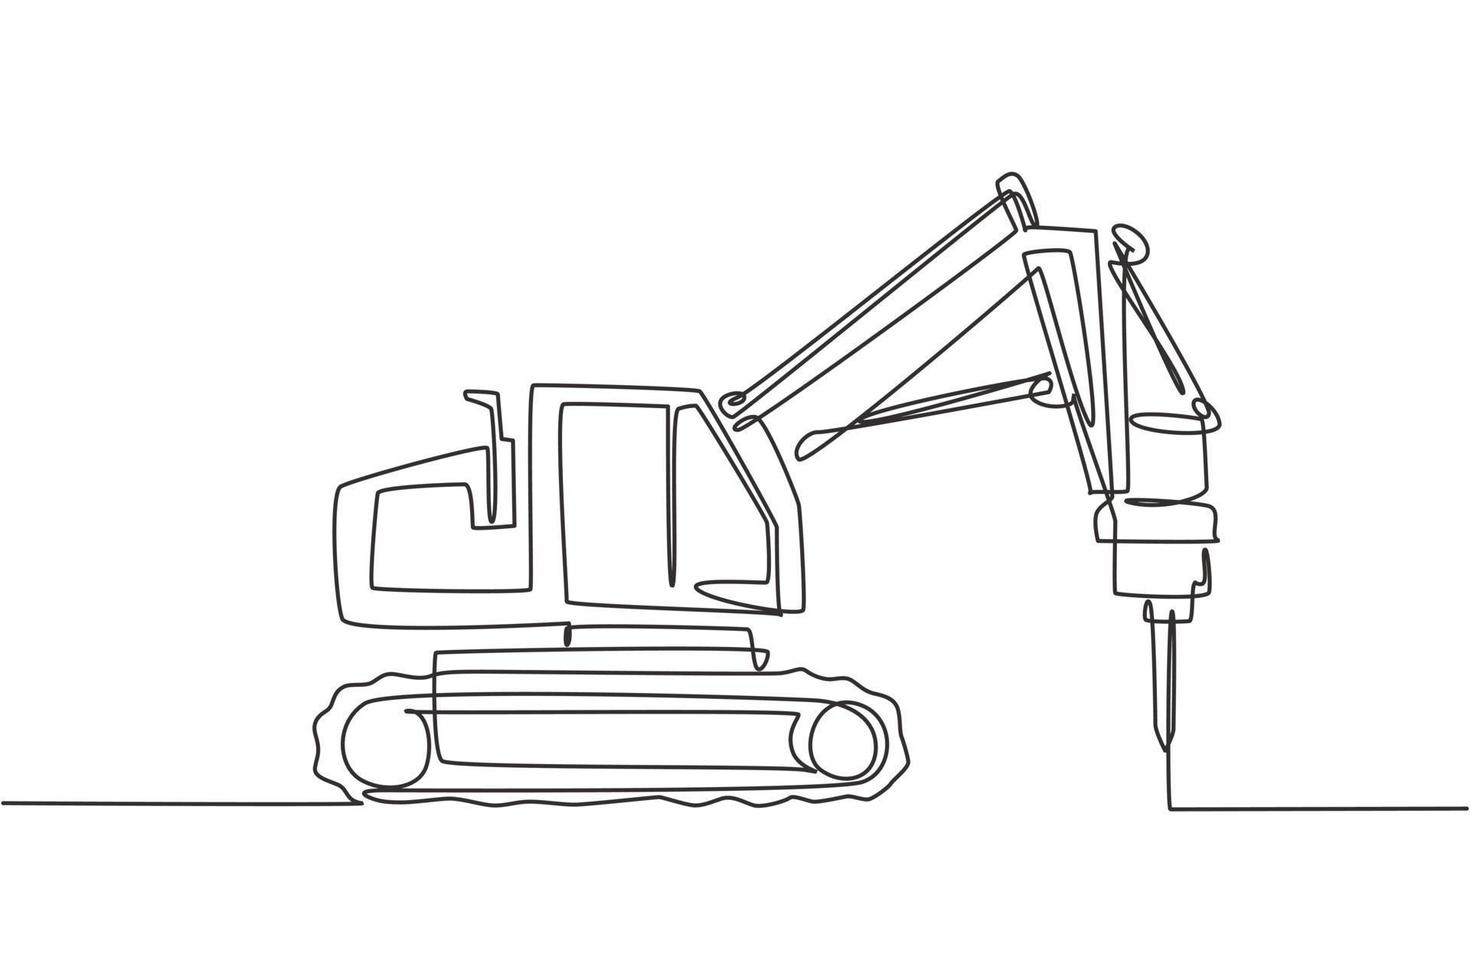 un disegno a linea singola di perforatrice per camion per l'illustrazione vettoriale di perforazione della terra del suolo, veicolo commerciale. concetto di costruzione di macchine scavatrici pesanti. moderno disegno grafico a linea continua